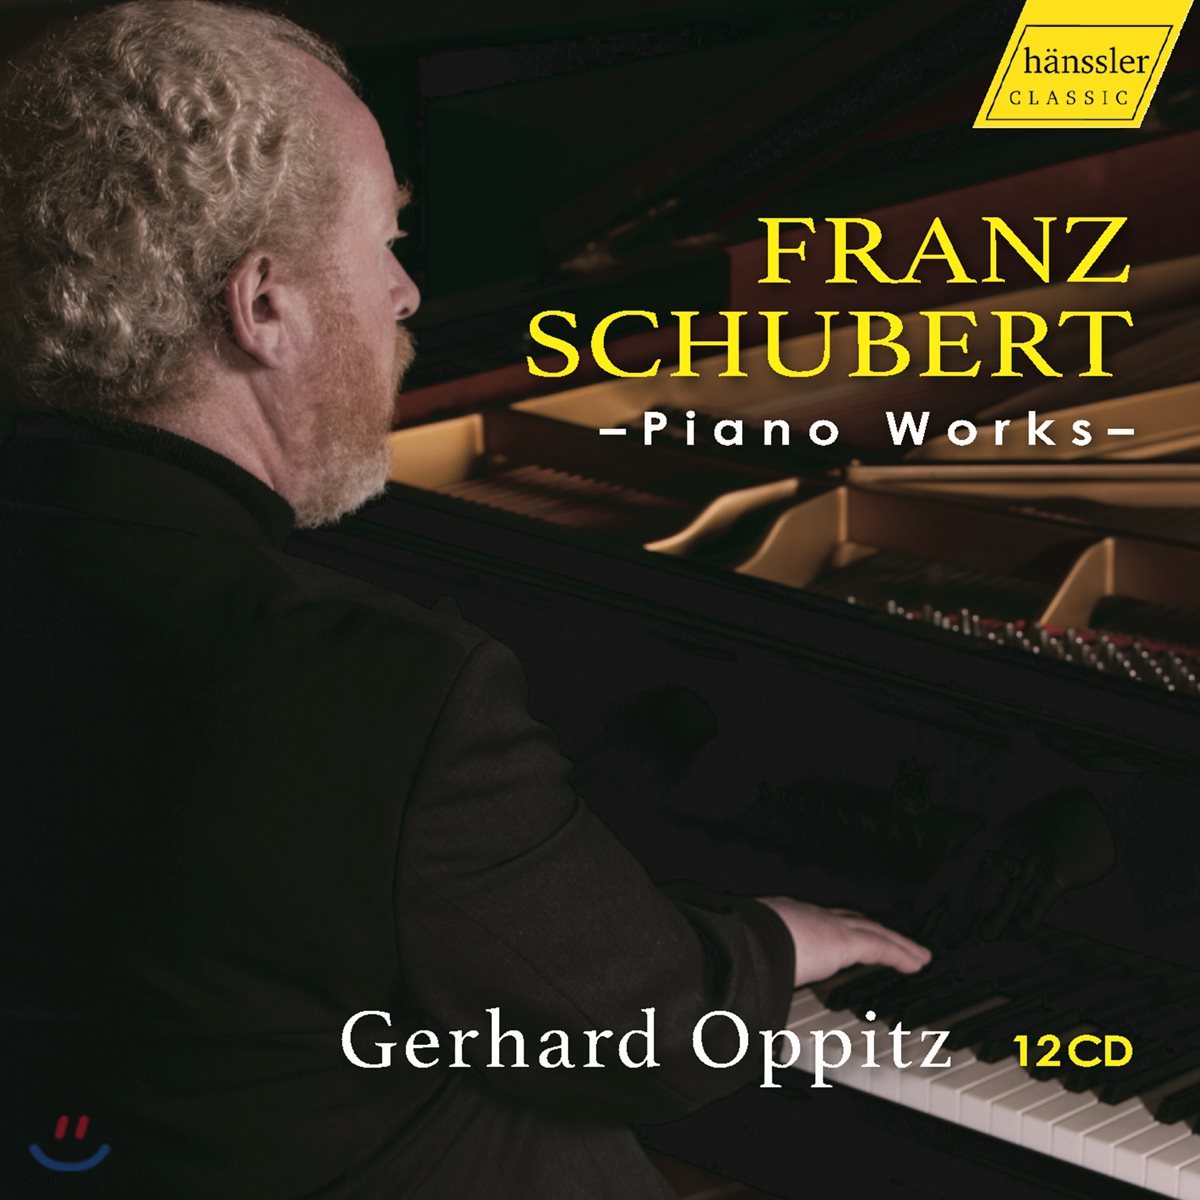 Gerhard　Works)　작품집　피아노　(Schubert:　오피츠　Piano　Oppitz　예스24　게르하르트　슈베르트: